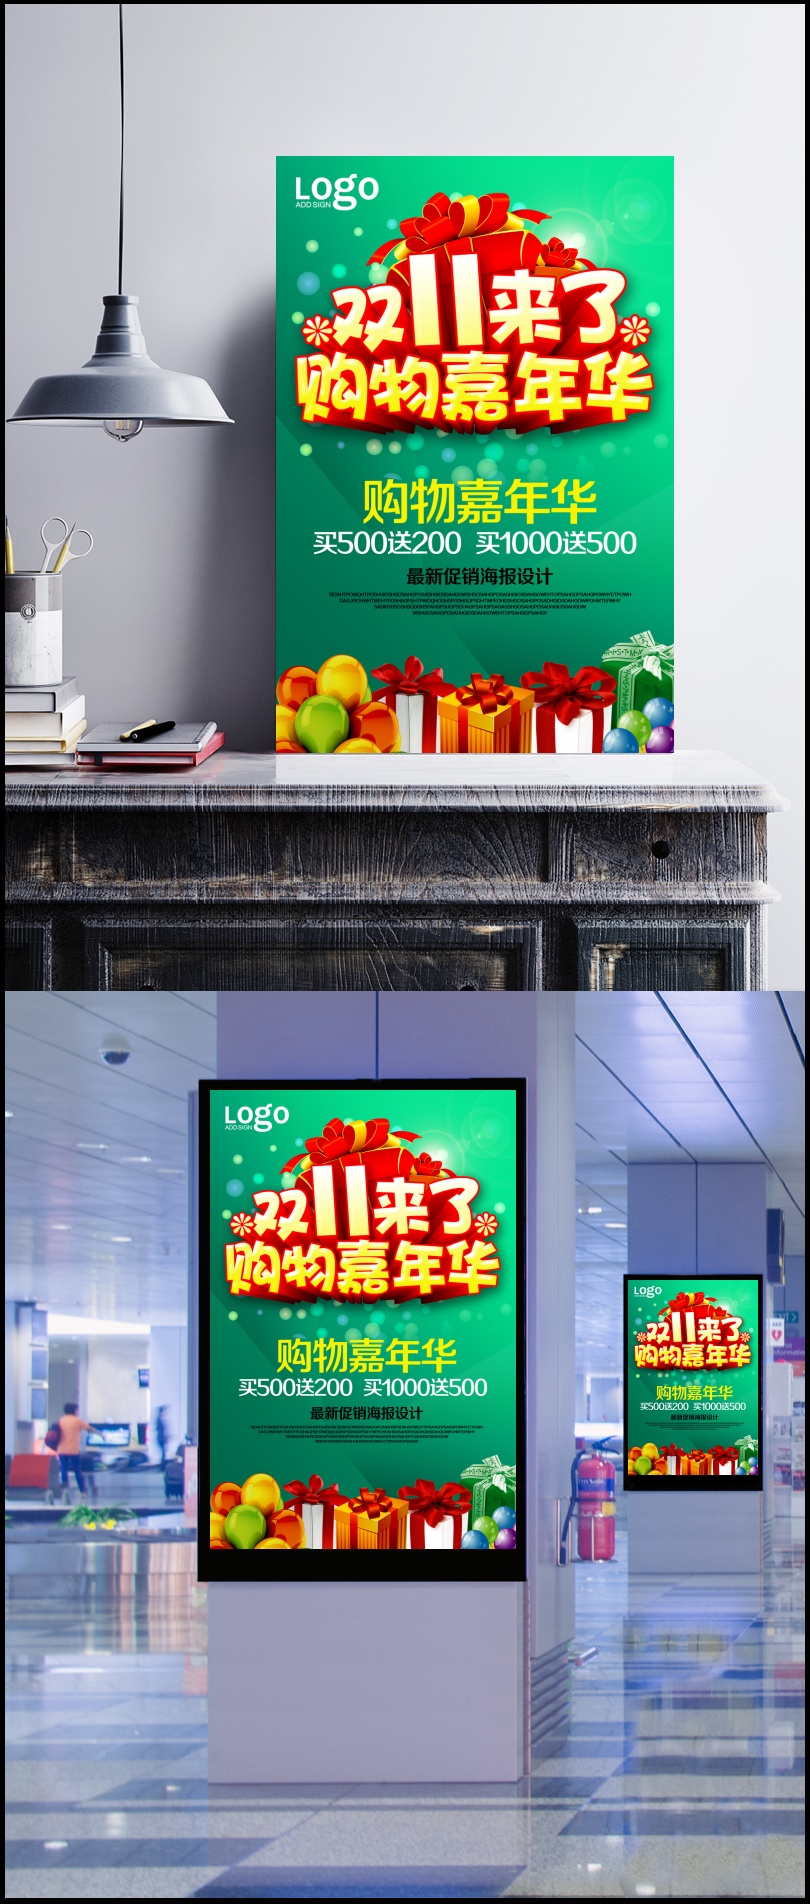 2017双十一购物嘉年华海报设计